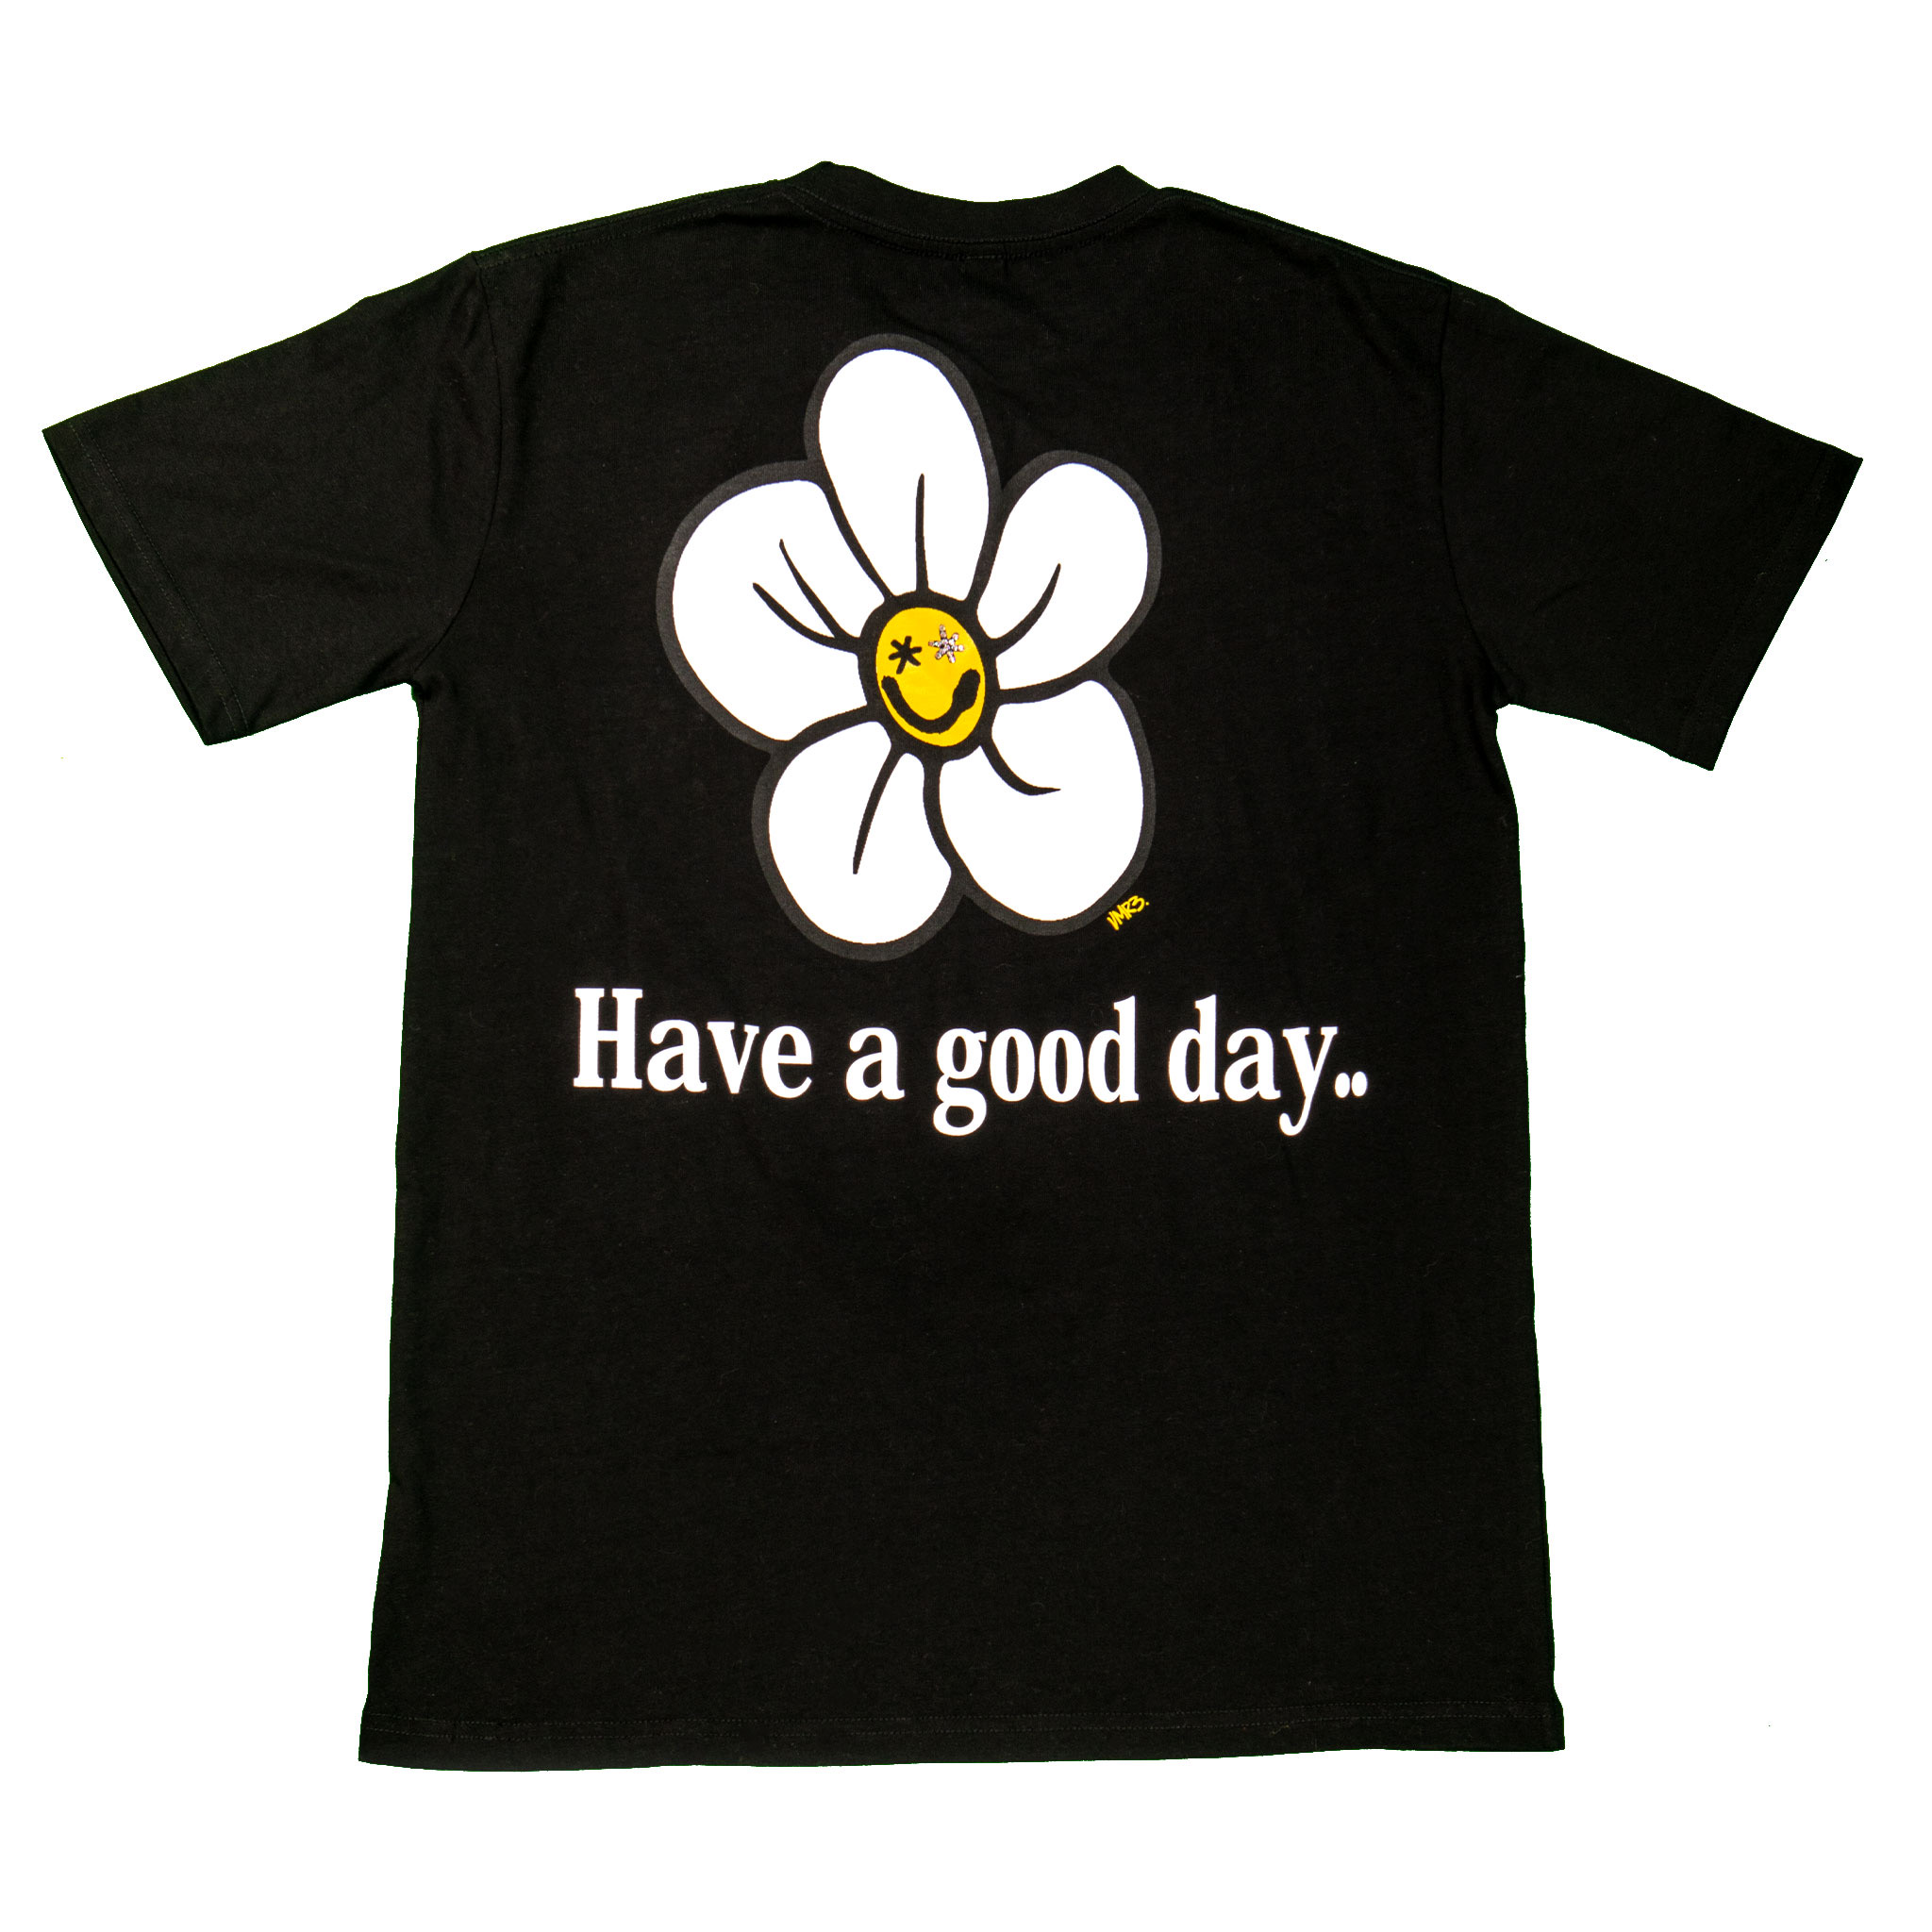 Good Day T-Shirt [black]